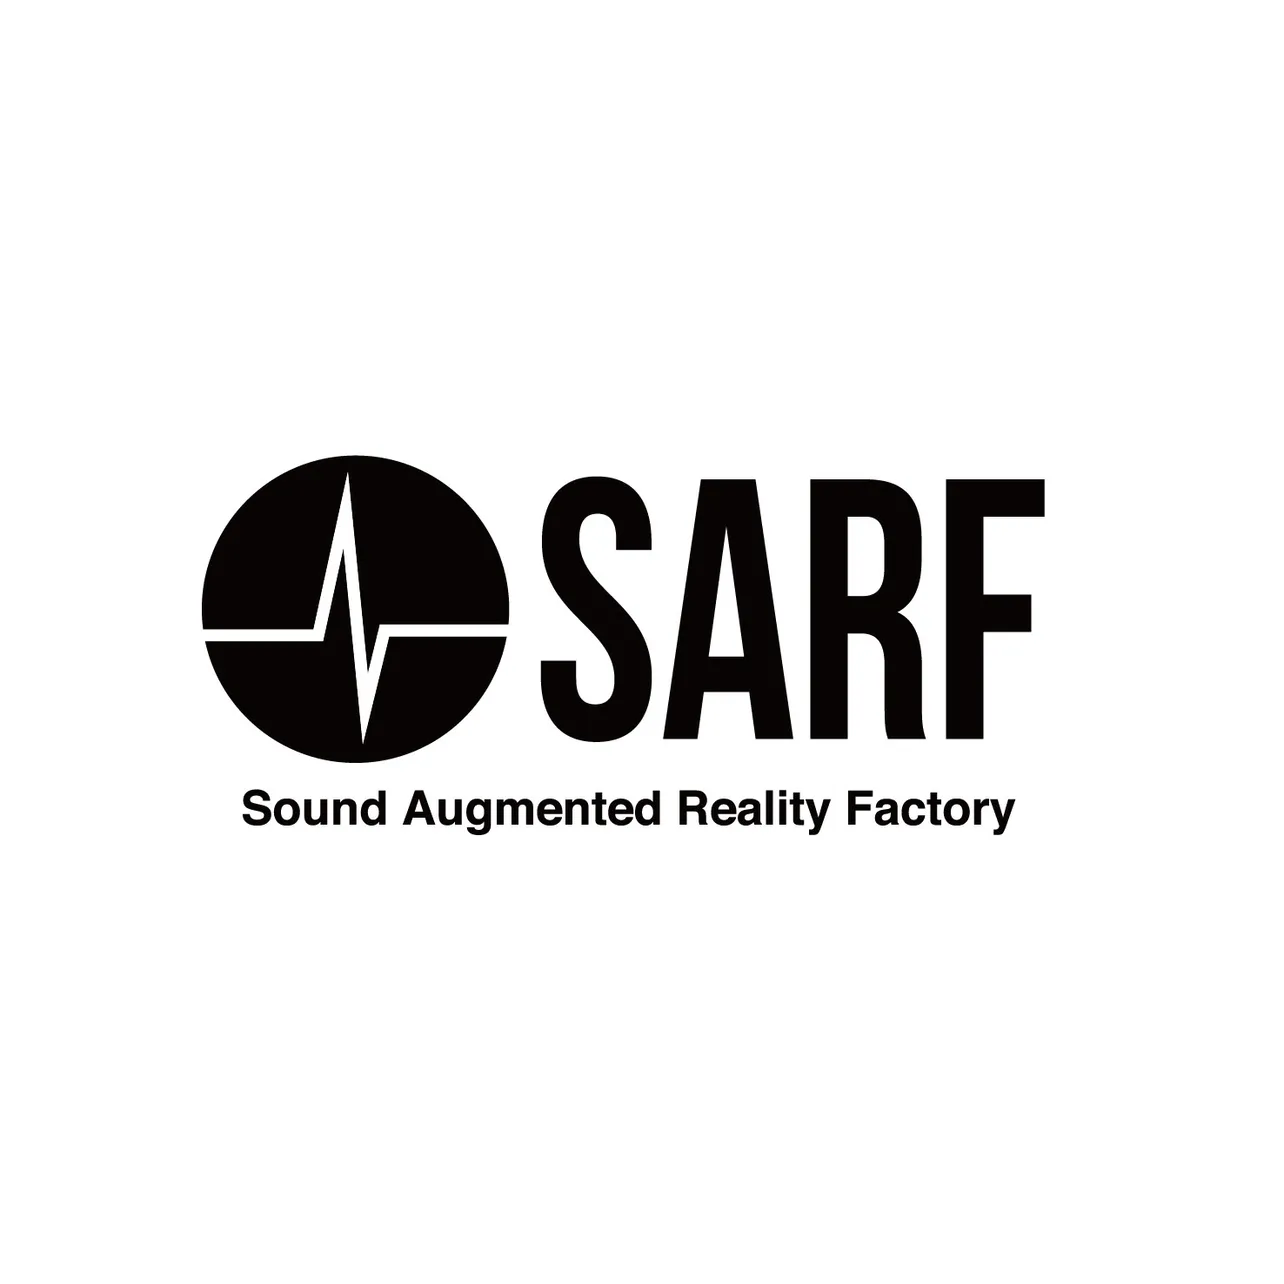 【写真を見る】音楽コンテンツを含む音声によるAPコンテンツ事業を主としたプロジェクト「SARF」